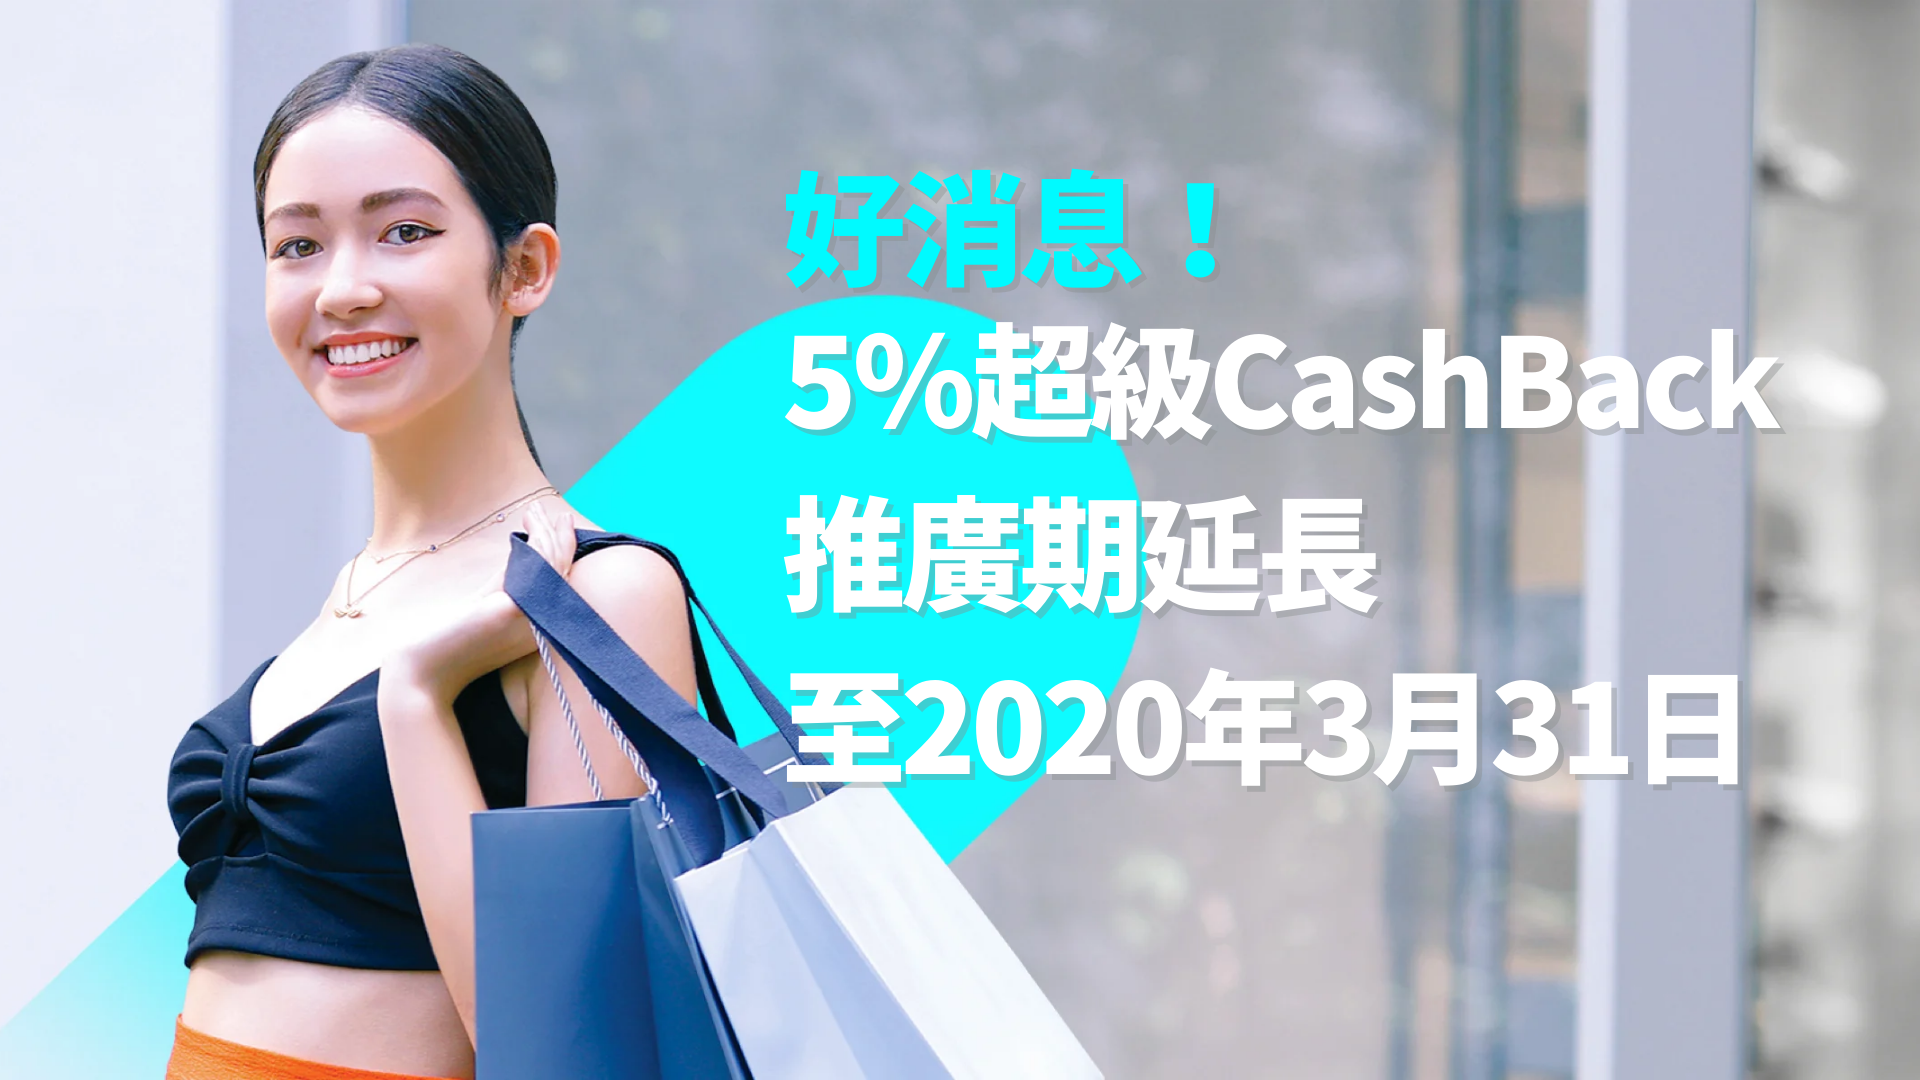 5%超級CashBack優惠延長至2021年3月31日